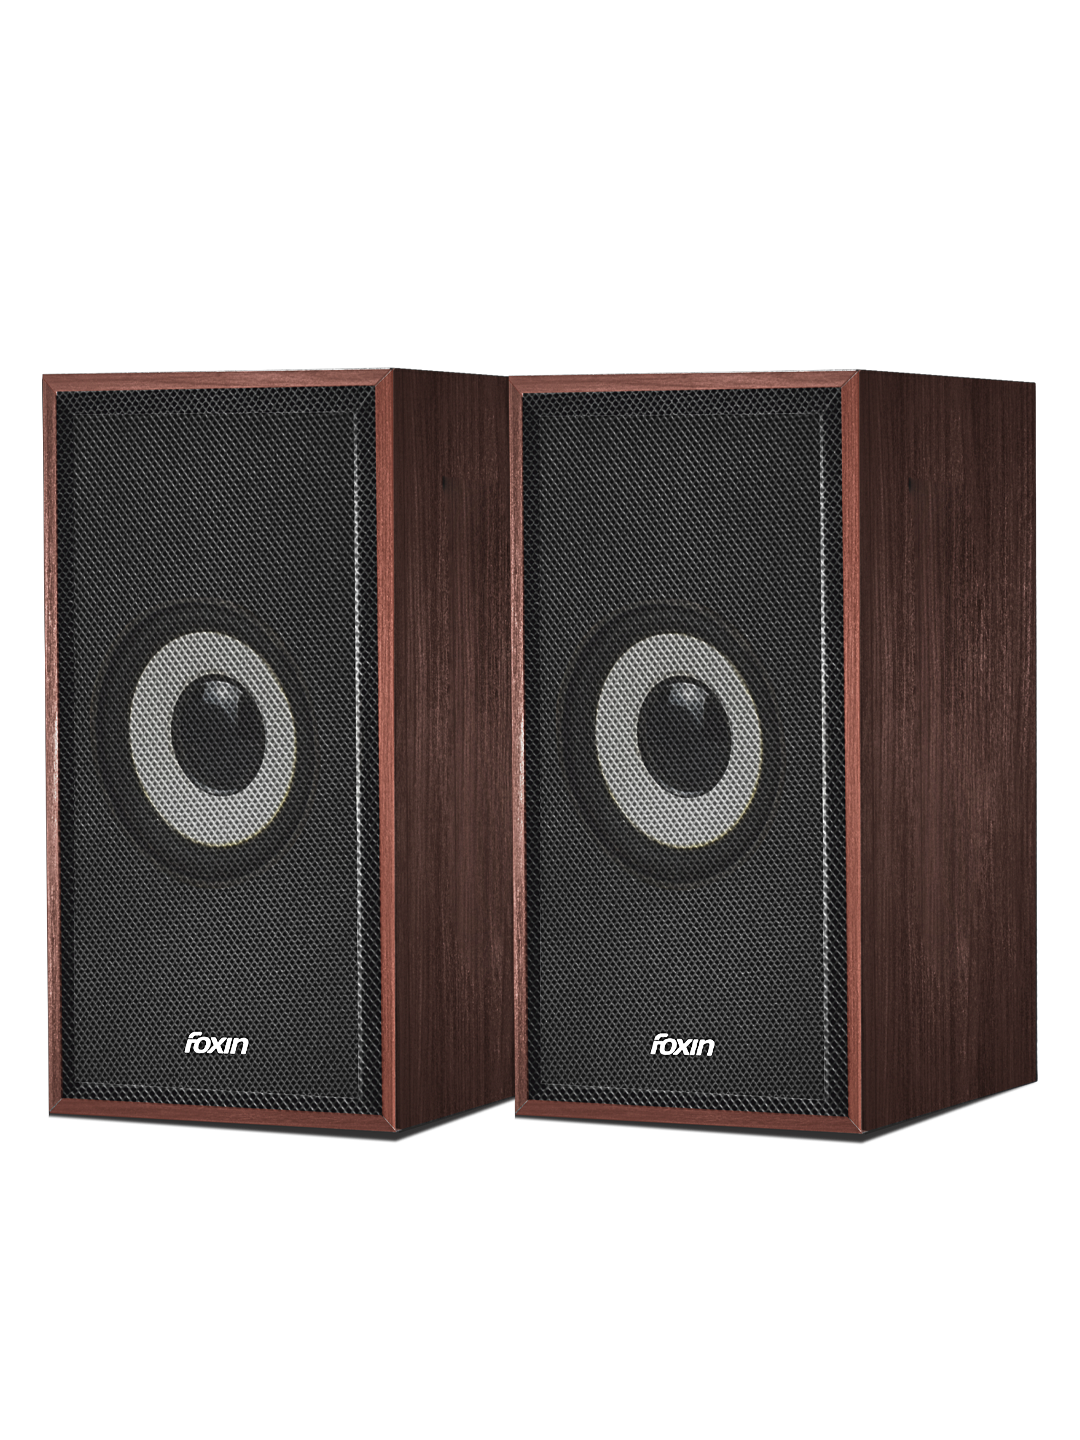 Foxin FMS 675 Plus 2.0 Wooden Multimedia Speakers 